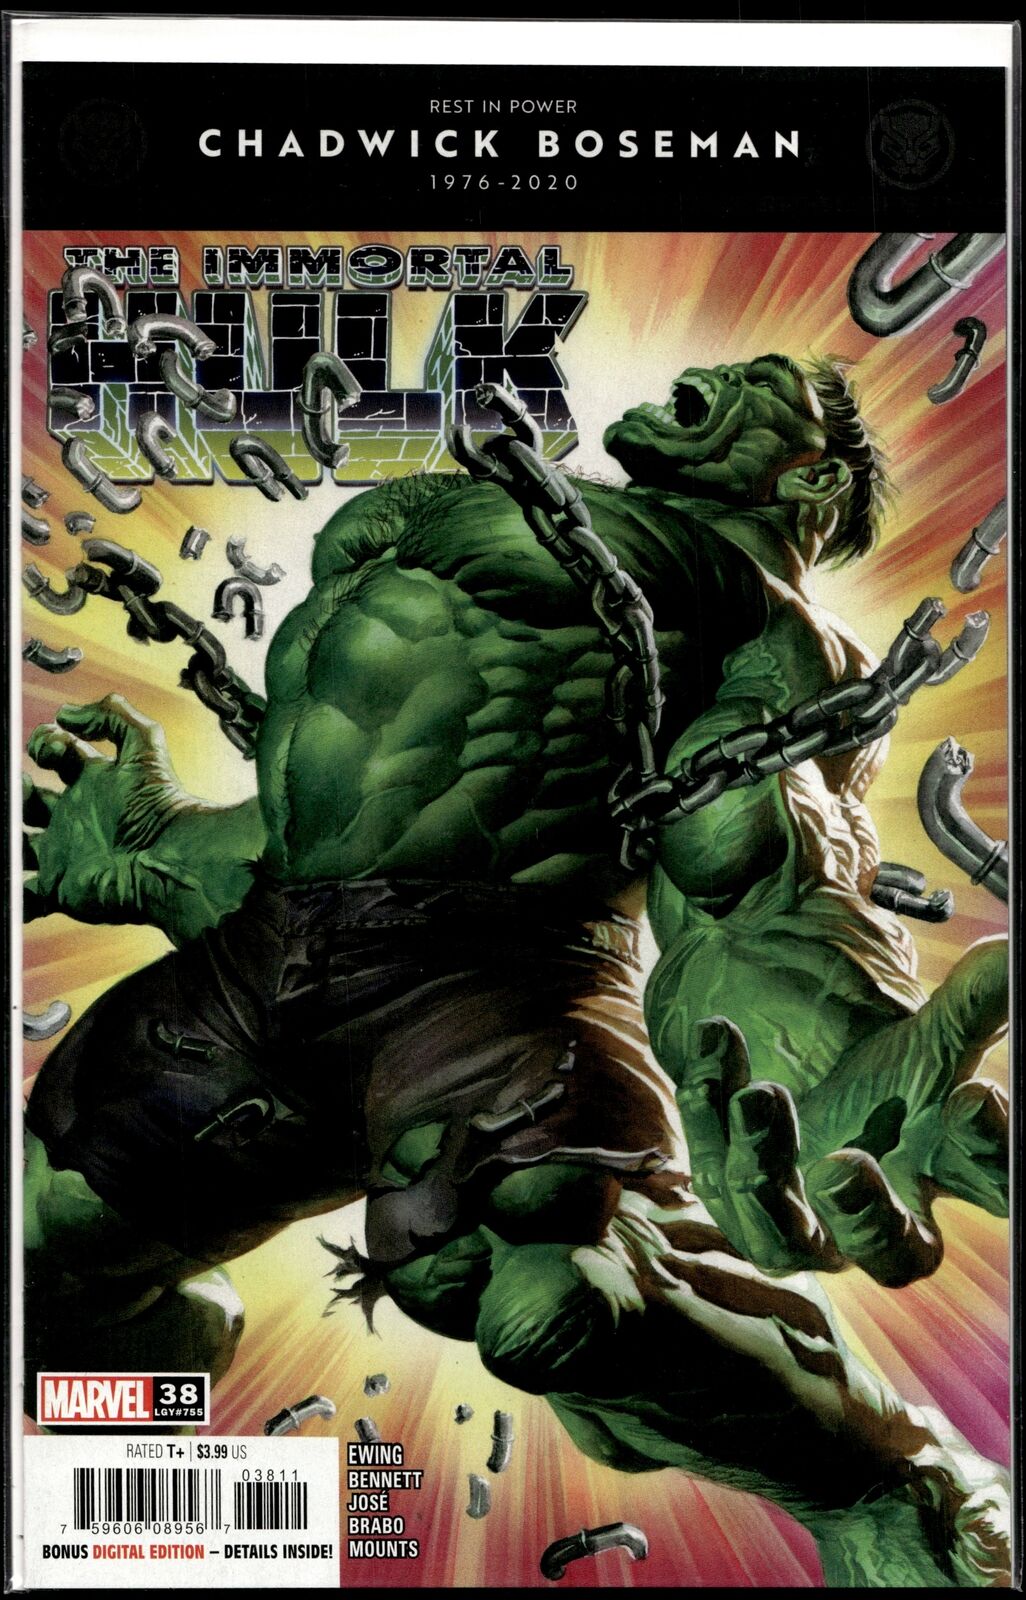 2020 Immortal Hulk #38 Ross Cover Marvel Comic